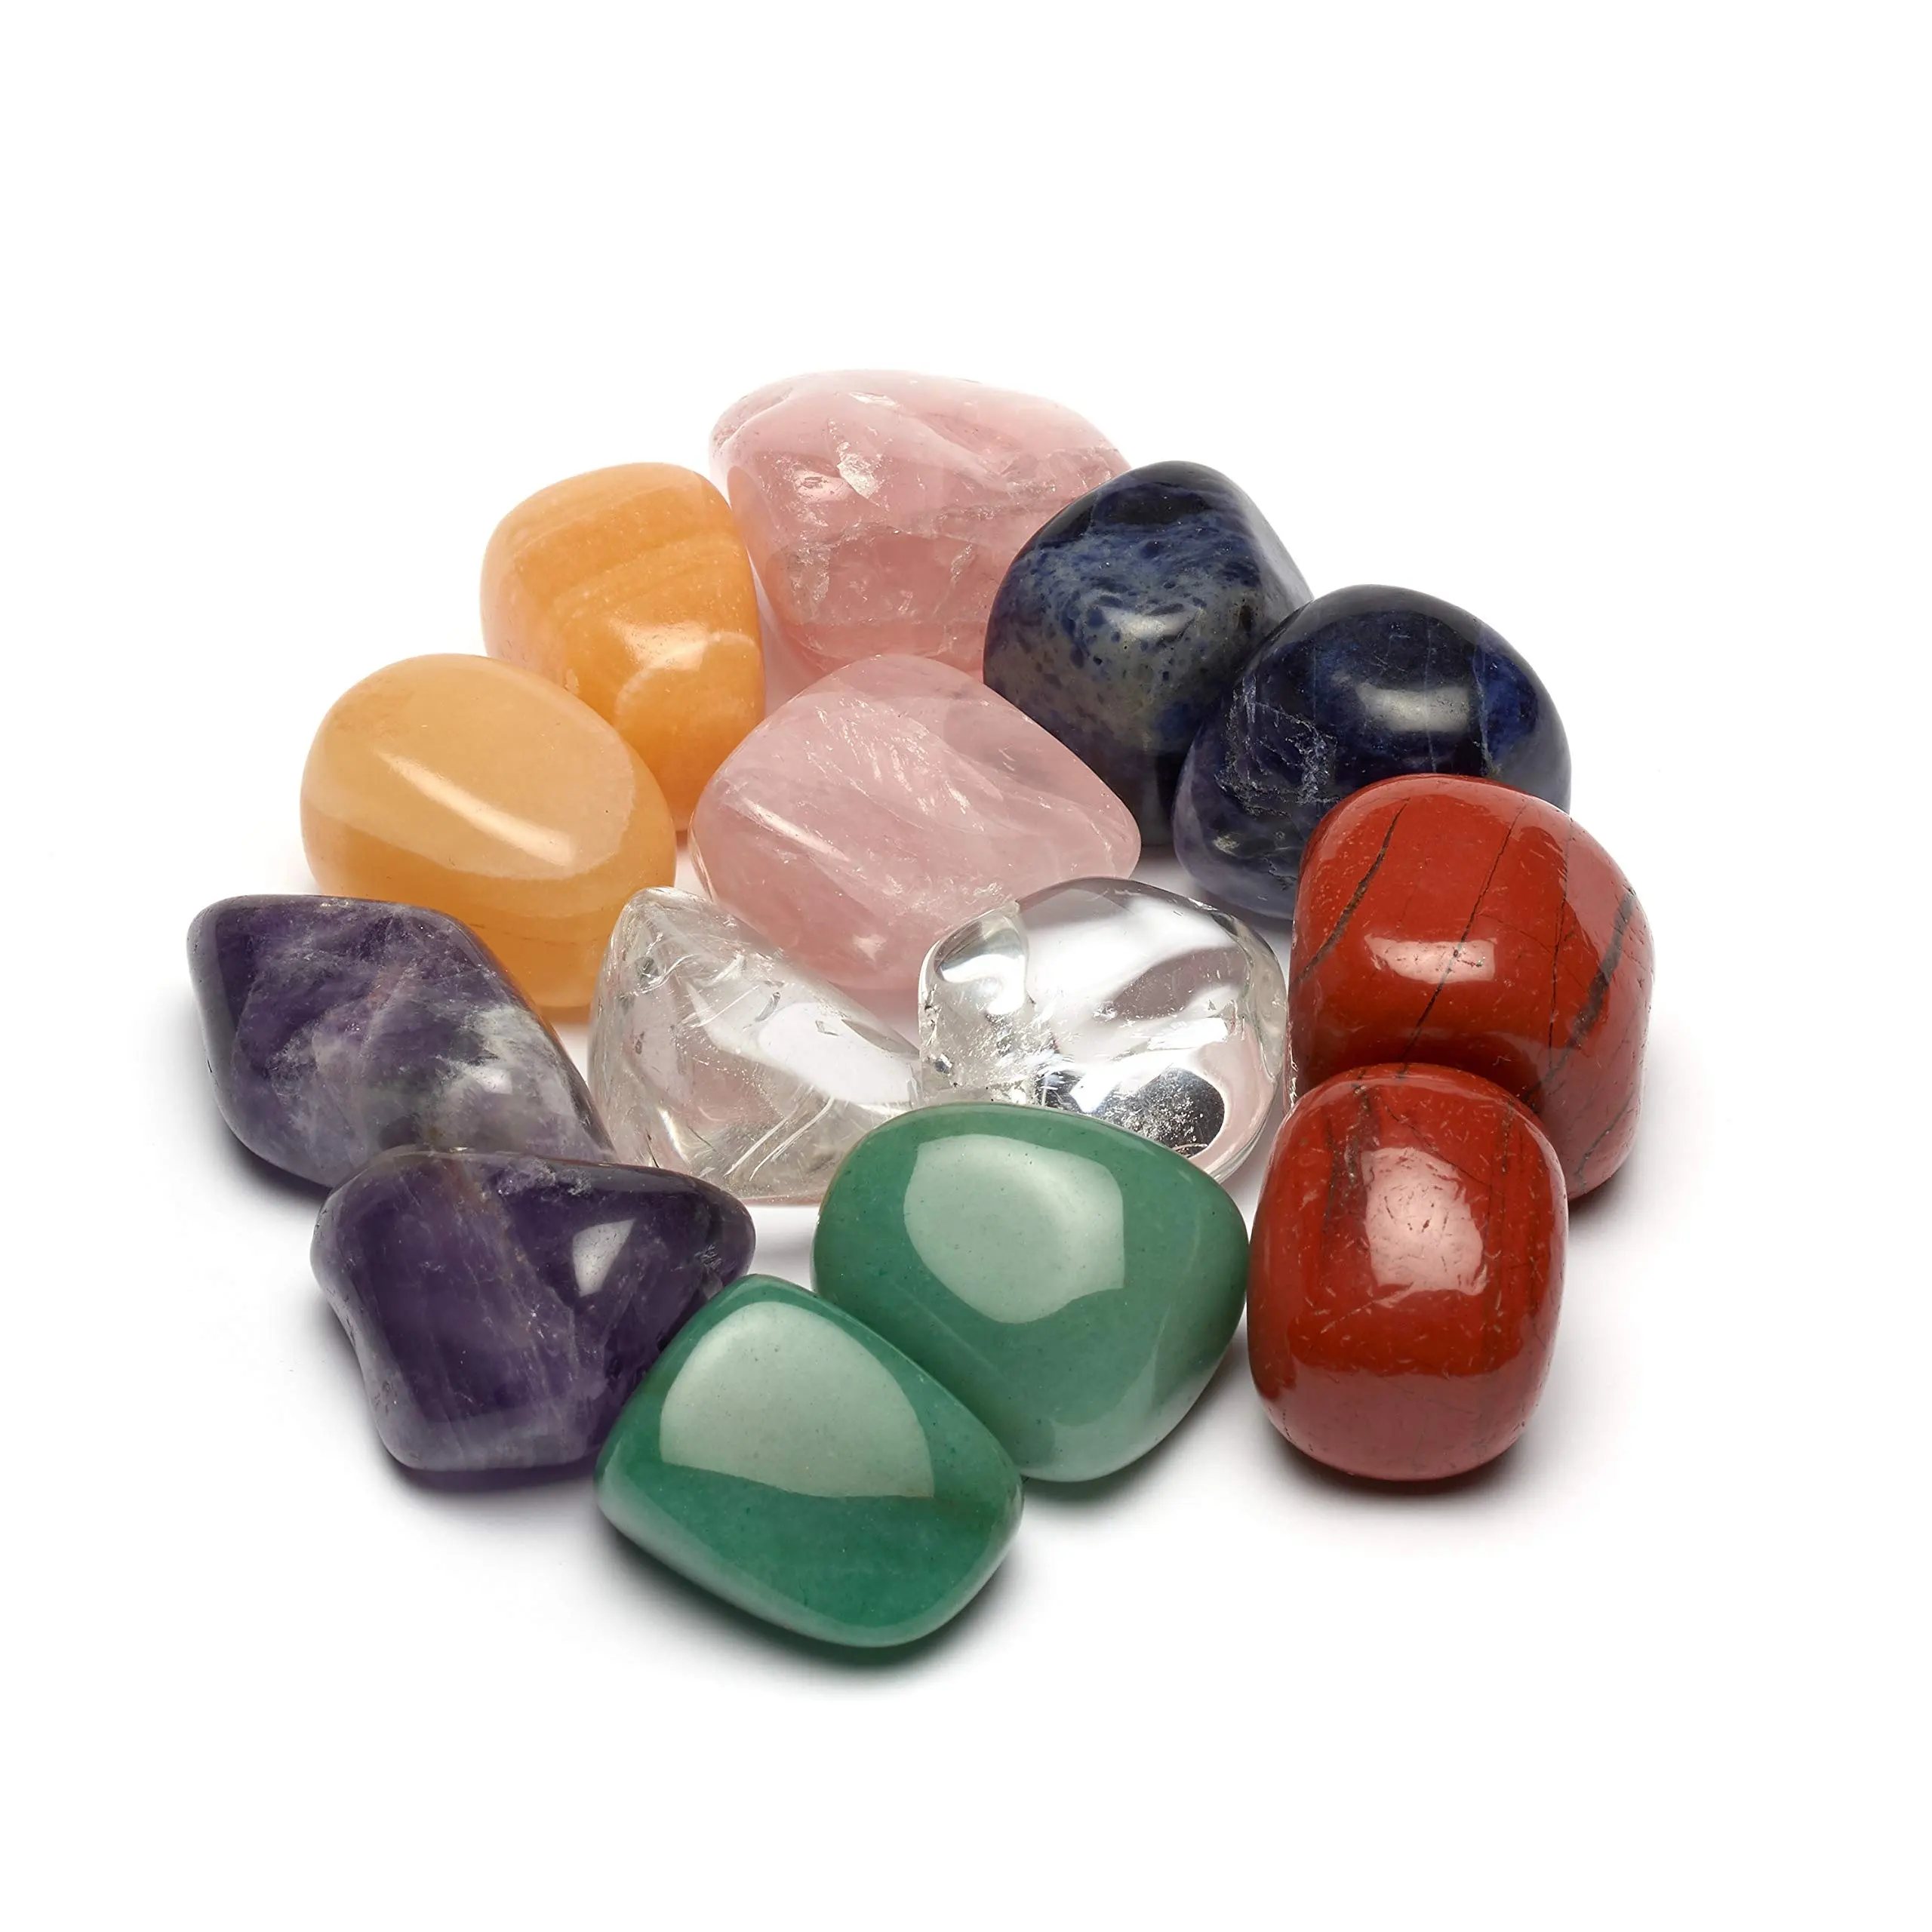 Pedras naturais de 3-5cm, cristais naturais para cura, com renda azul, estilo ágato, estilo tumblr